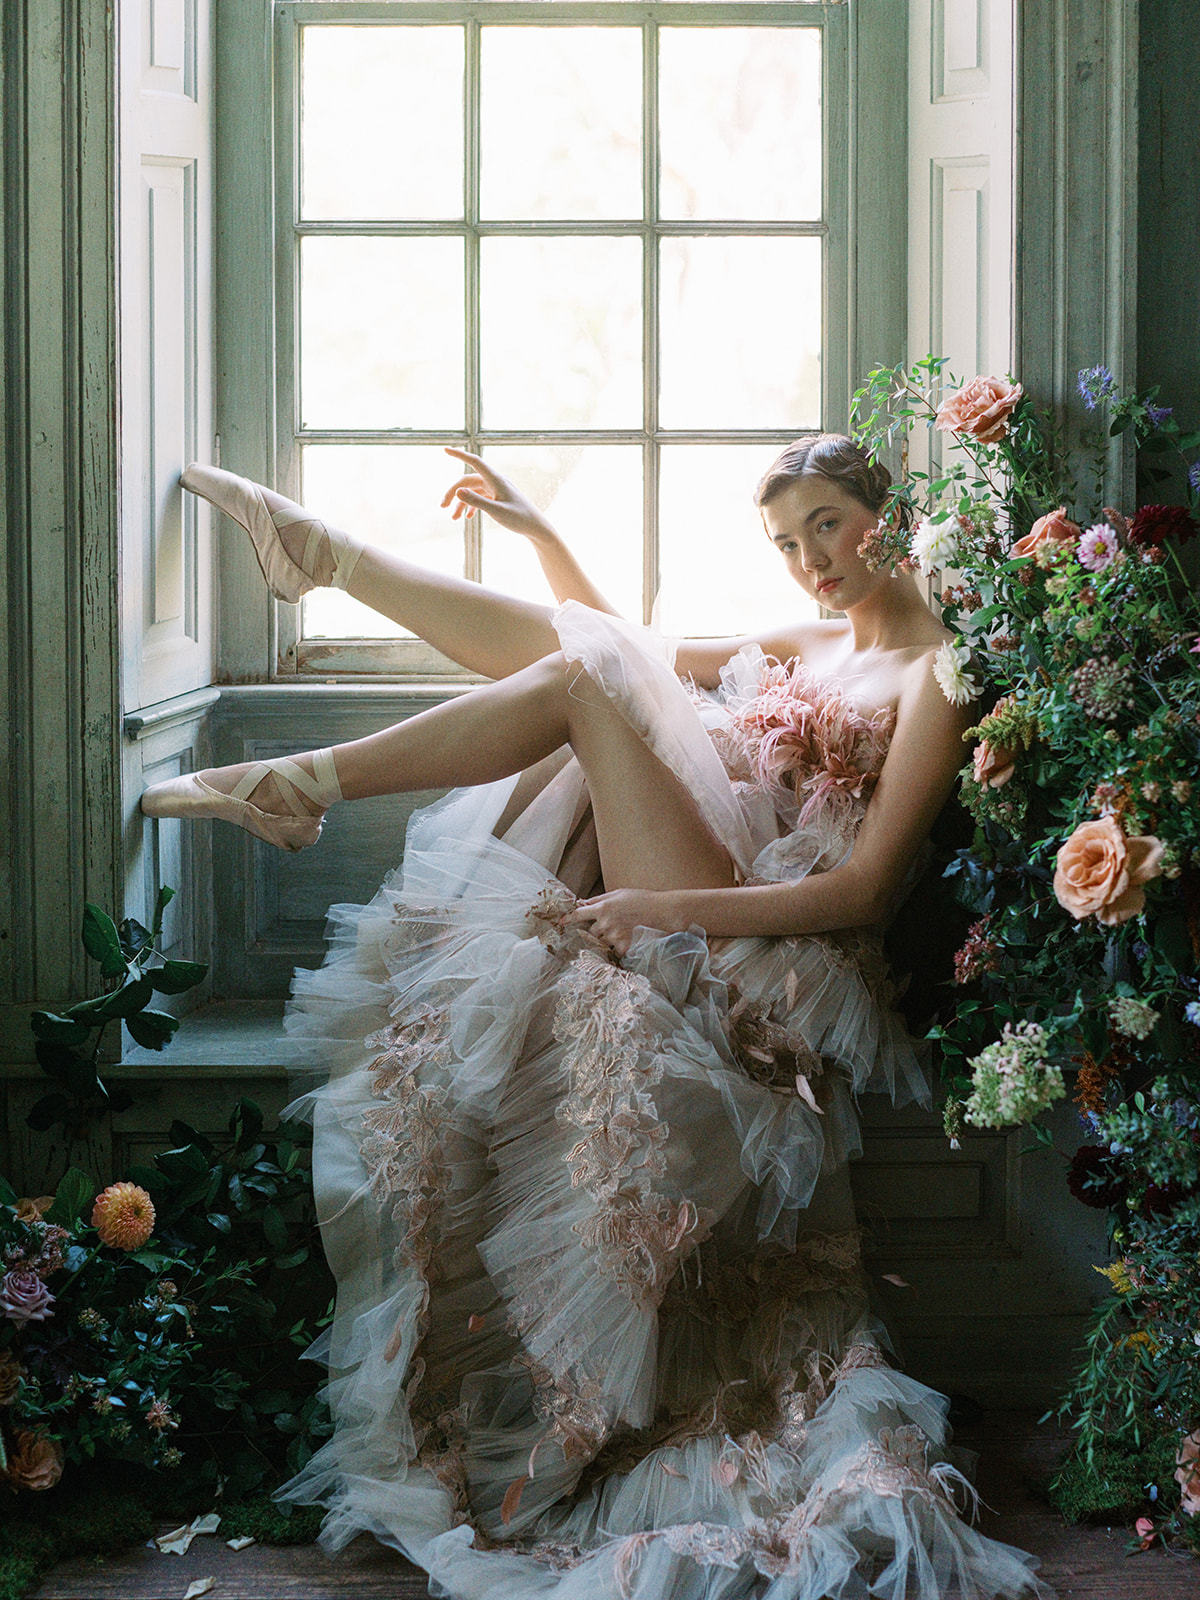 Ballet themed editorial shoot